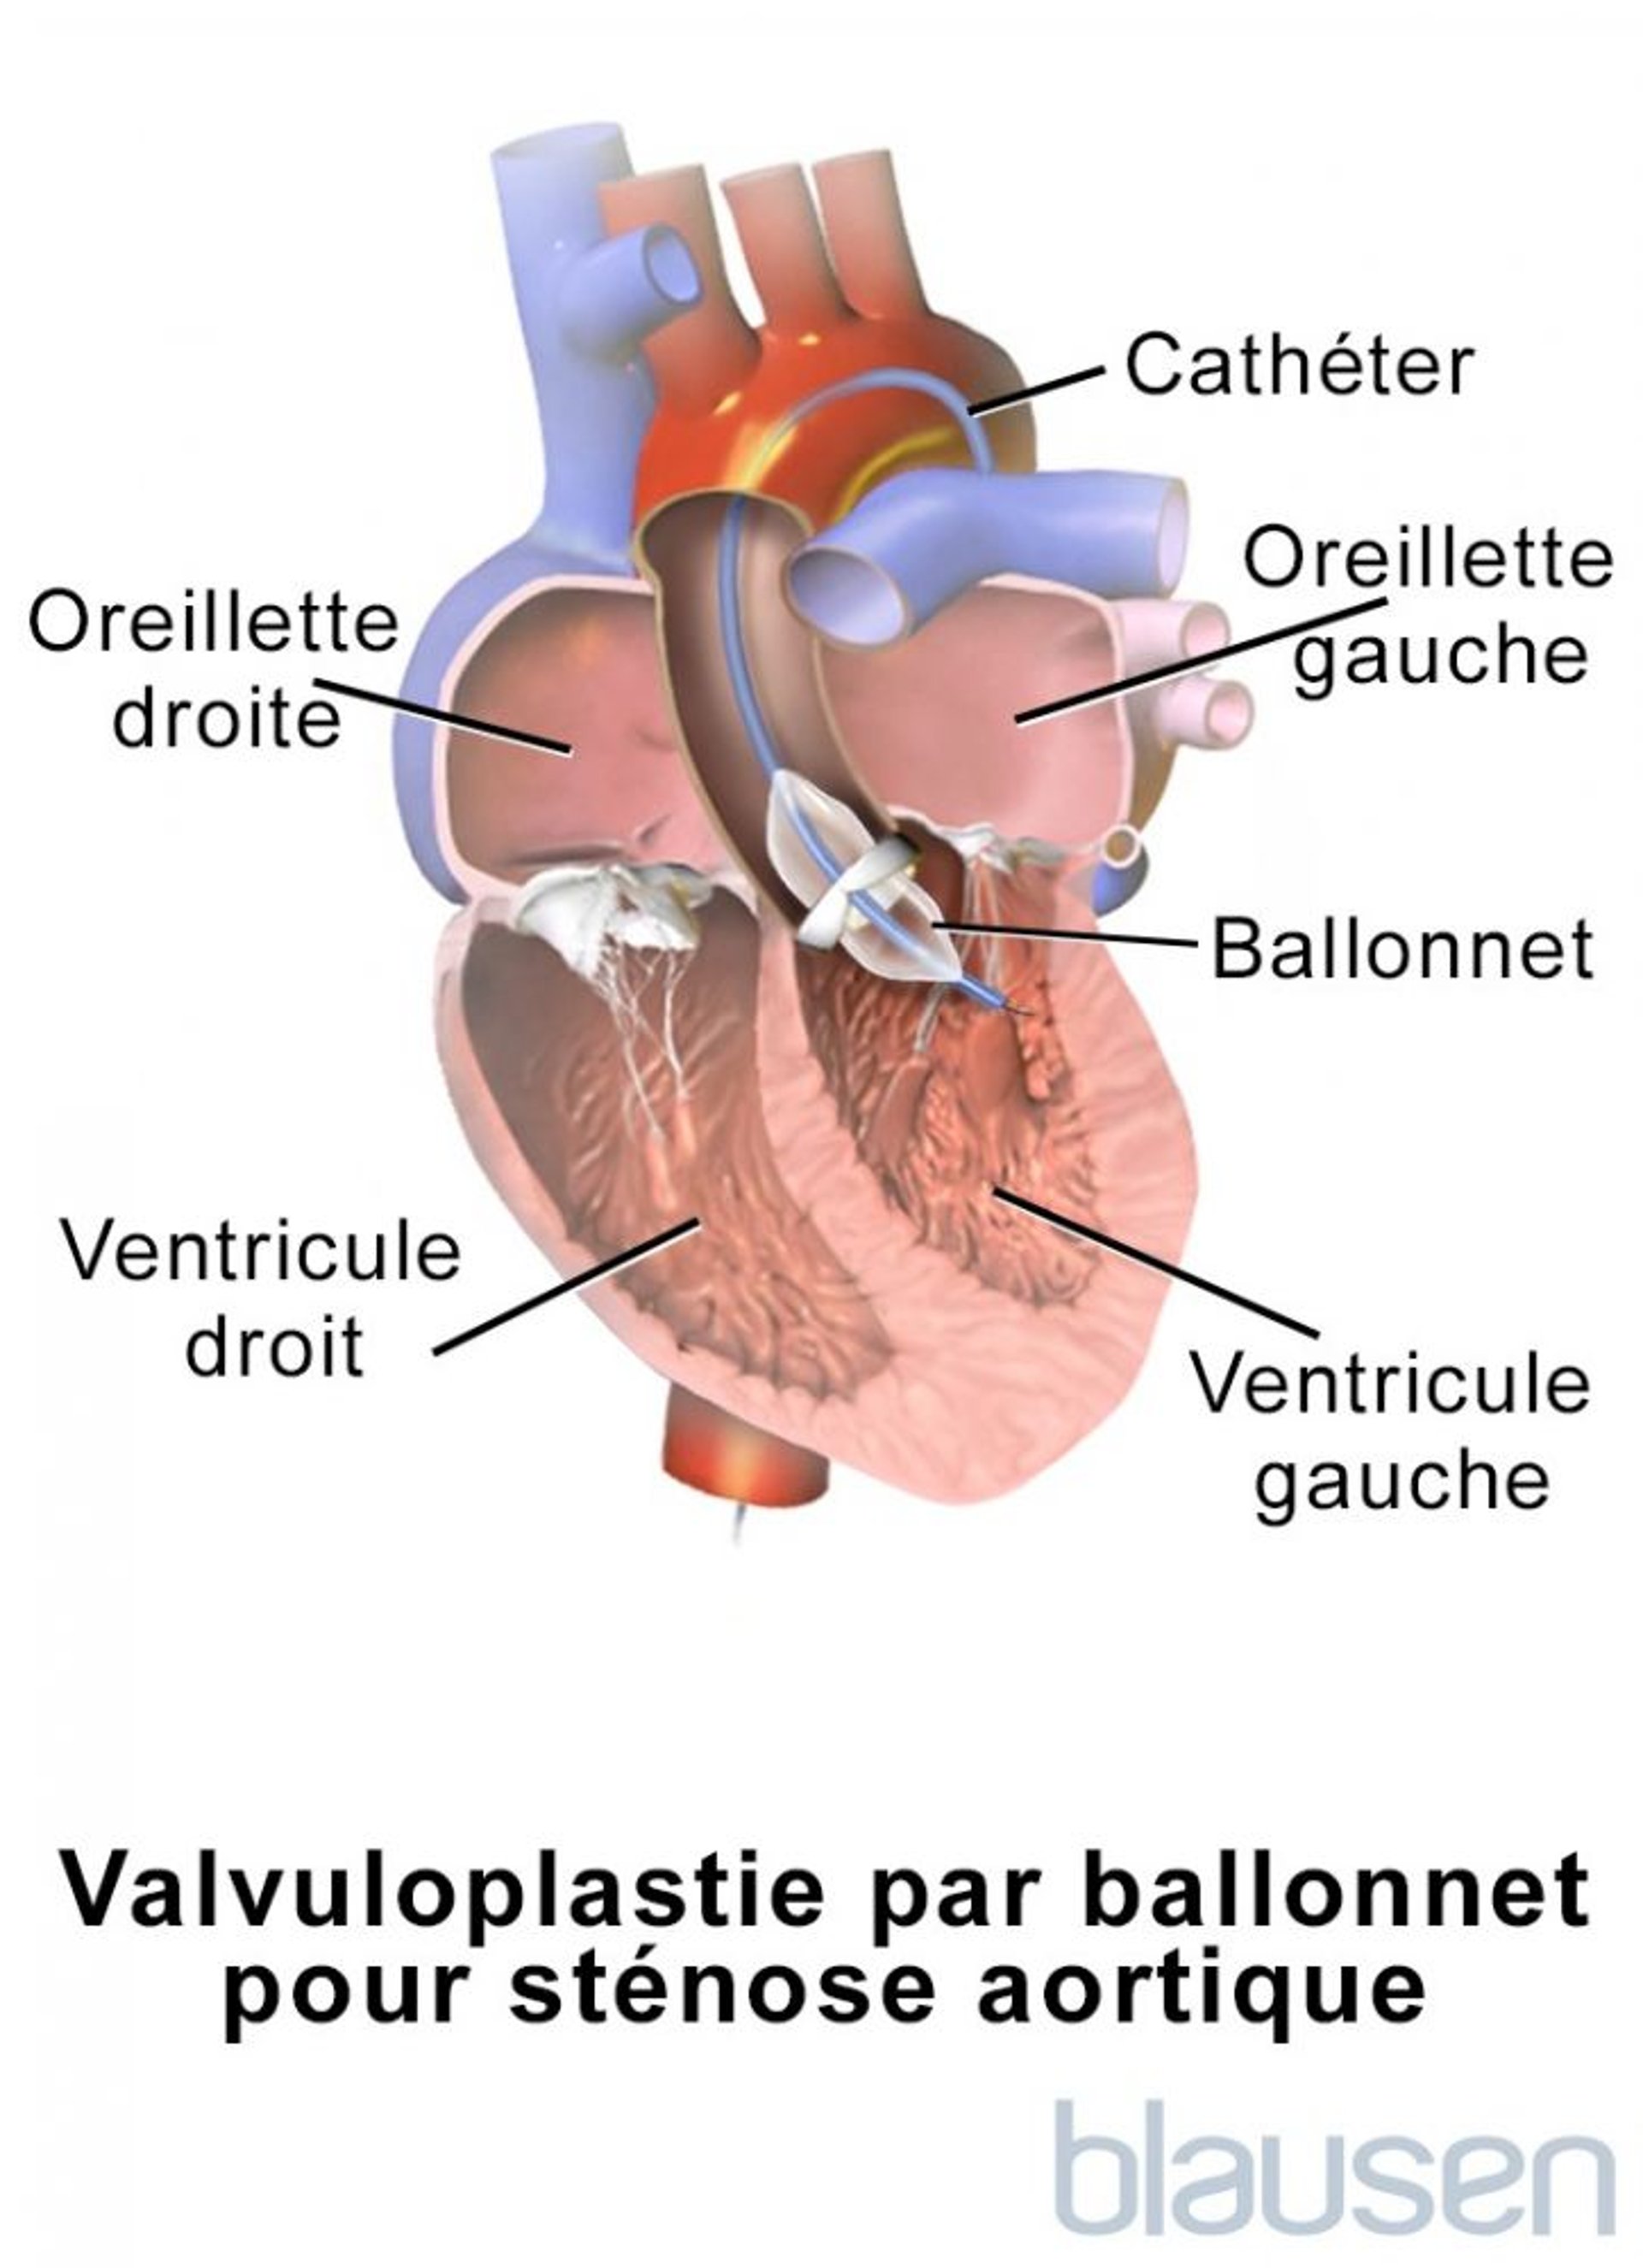 Valvuloplastie par ballonnet dans la sténose aortique